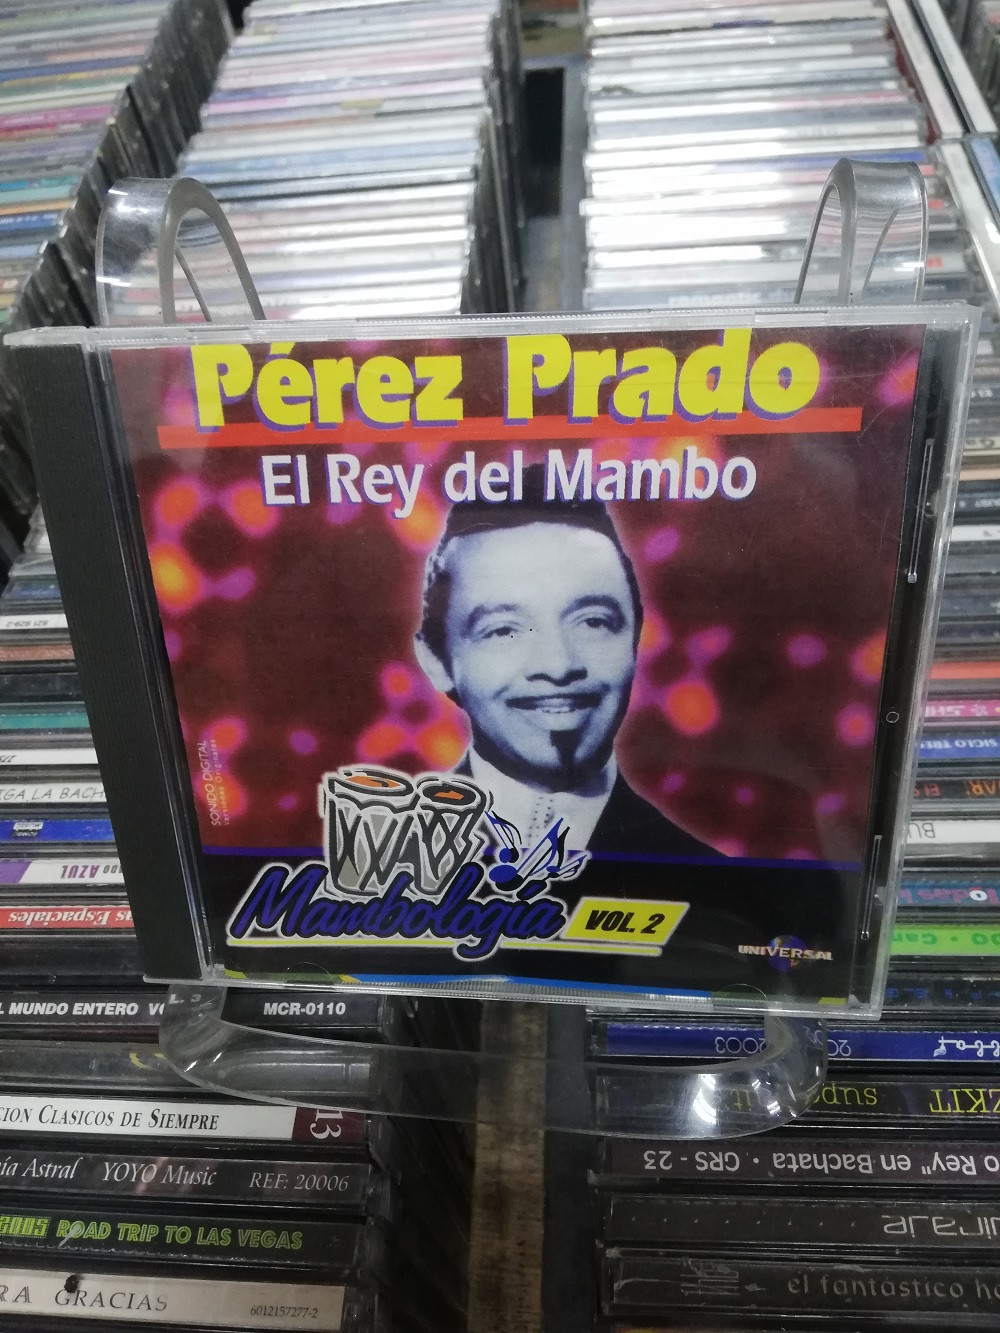 Imagen CD PEREZ PRADO - MAMBOLOGIA VOL. 2 1